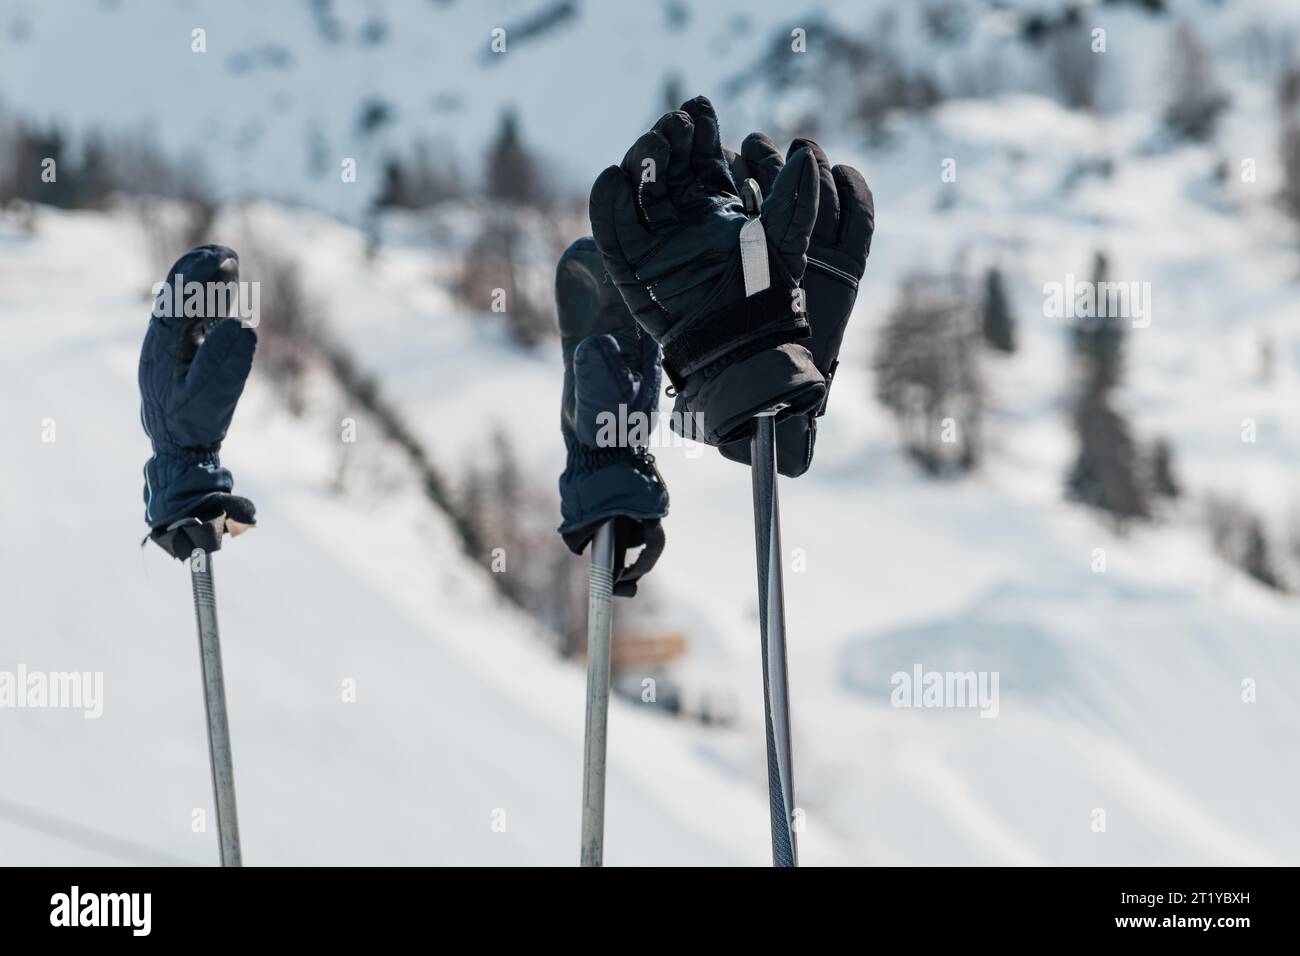 Guantes De Esquí Para Esquiar En Invierno Fotos, retratos, imágenes y  fotografía de archivo libres de derecho. Image 95151603